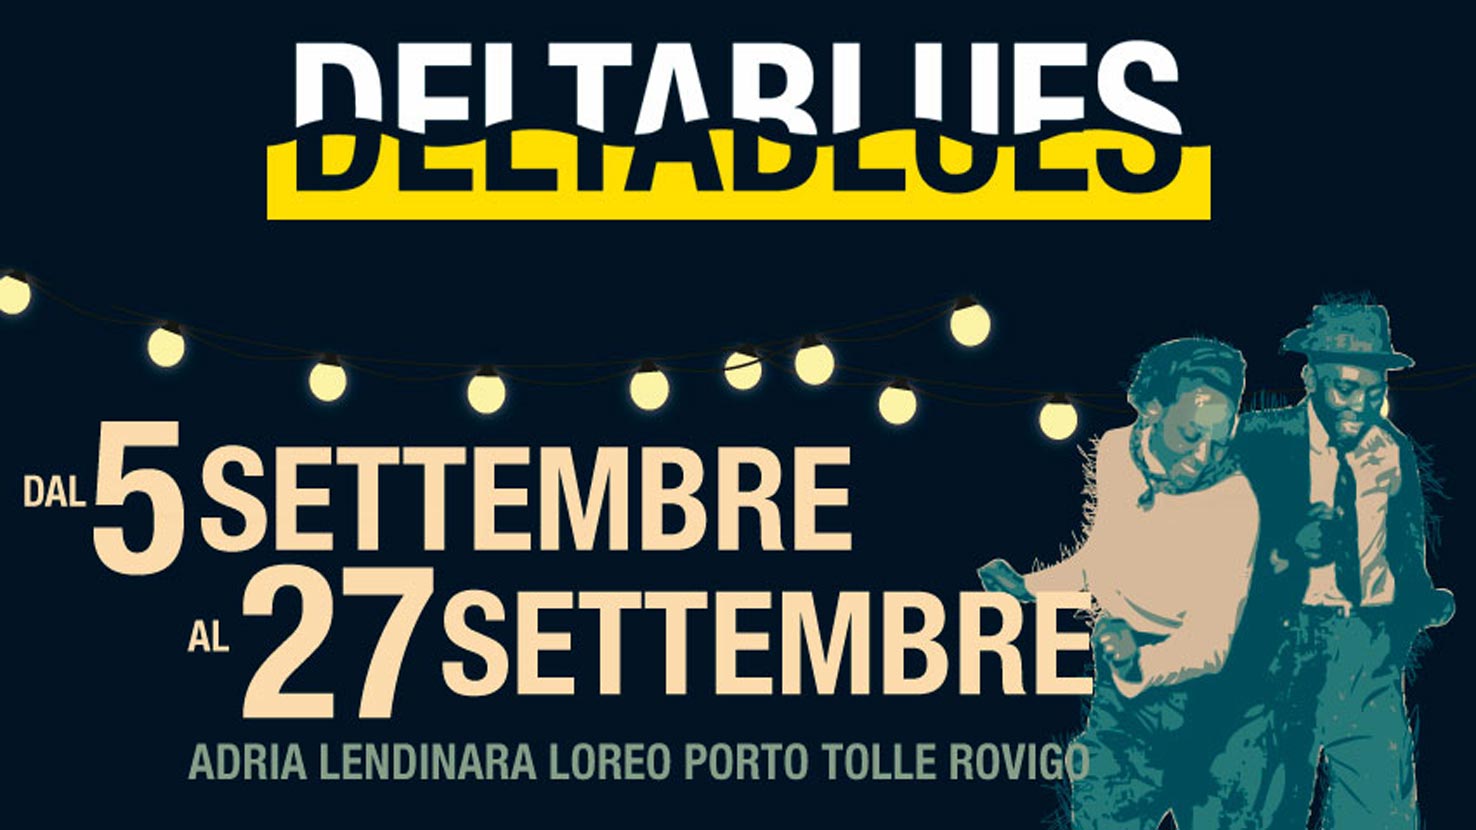 Ritorna ad Adria le 33esima edizione del Deltablues Festival